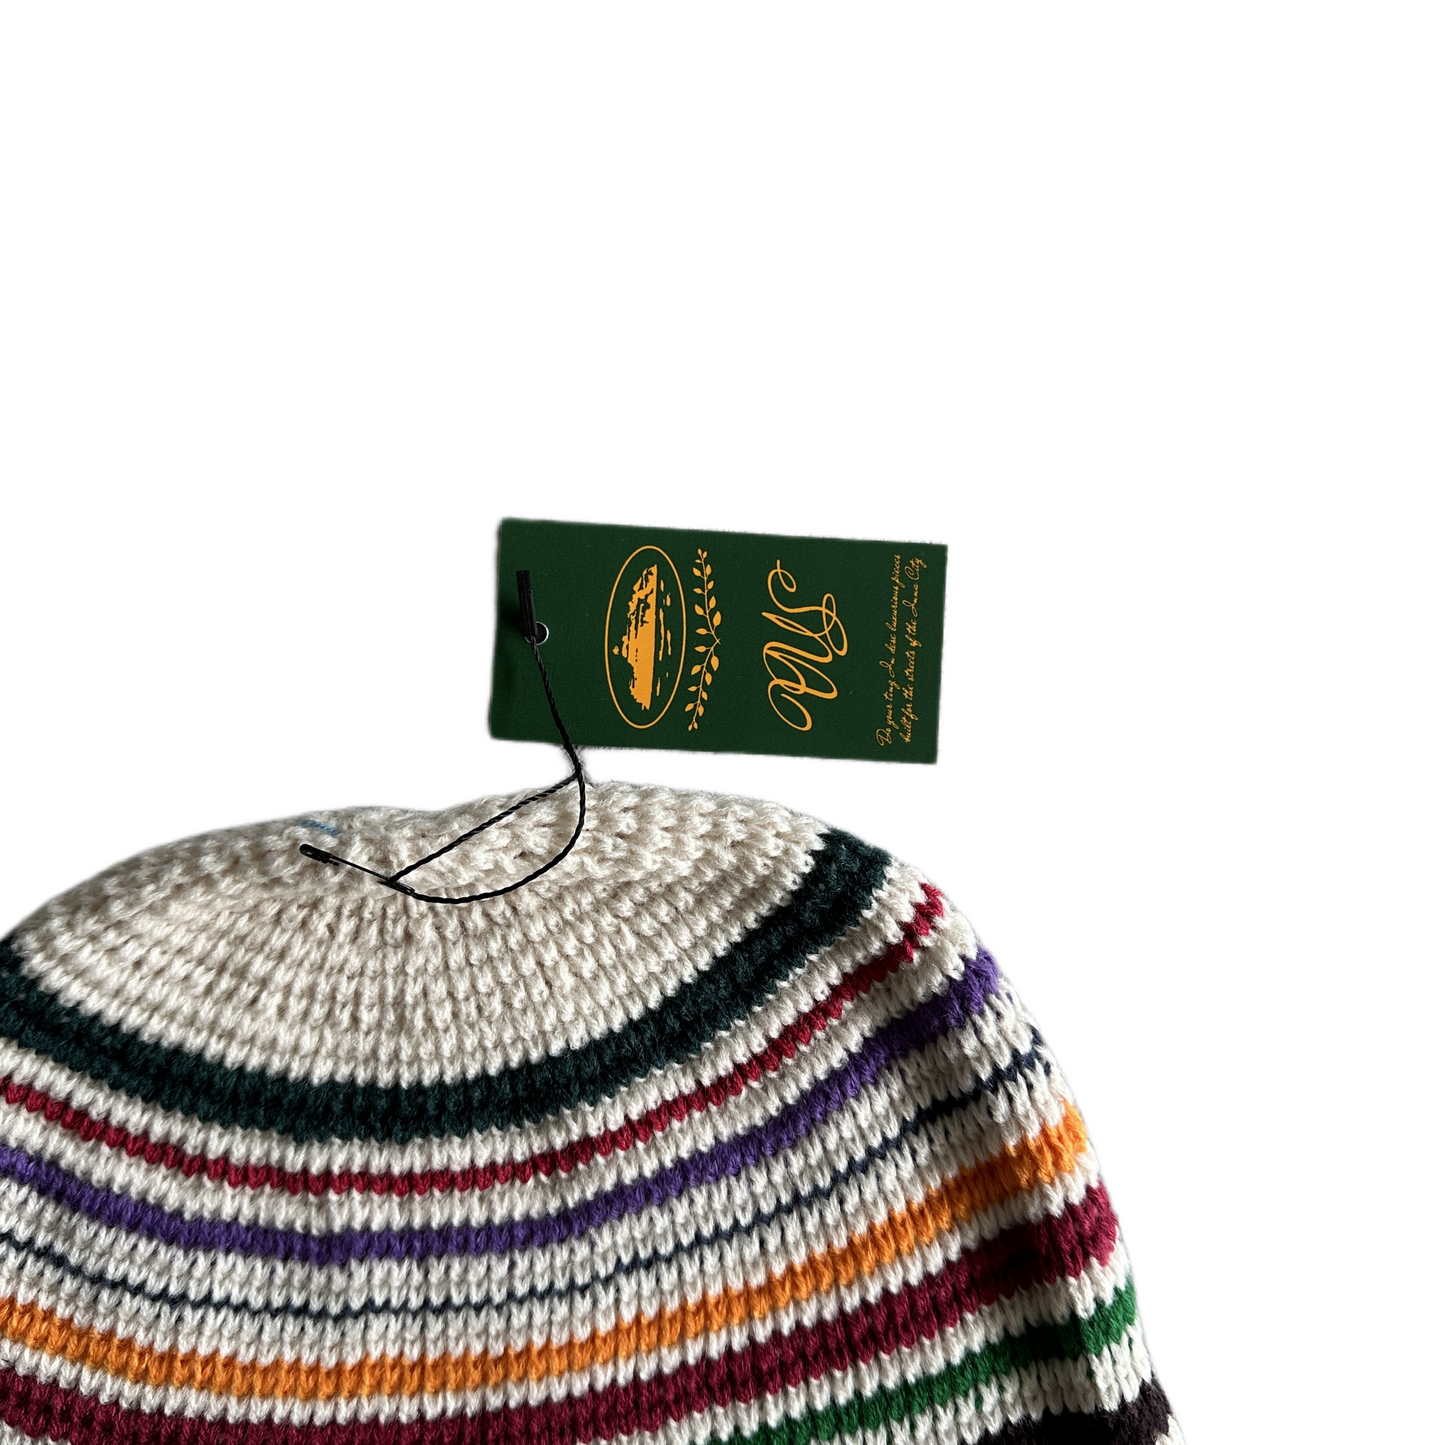 Corteiz Crochet Beanie Knitting Warm Cap Striped Cold Hat - Beige/Black